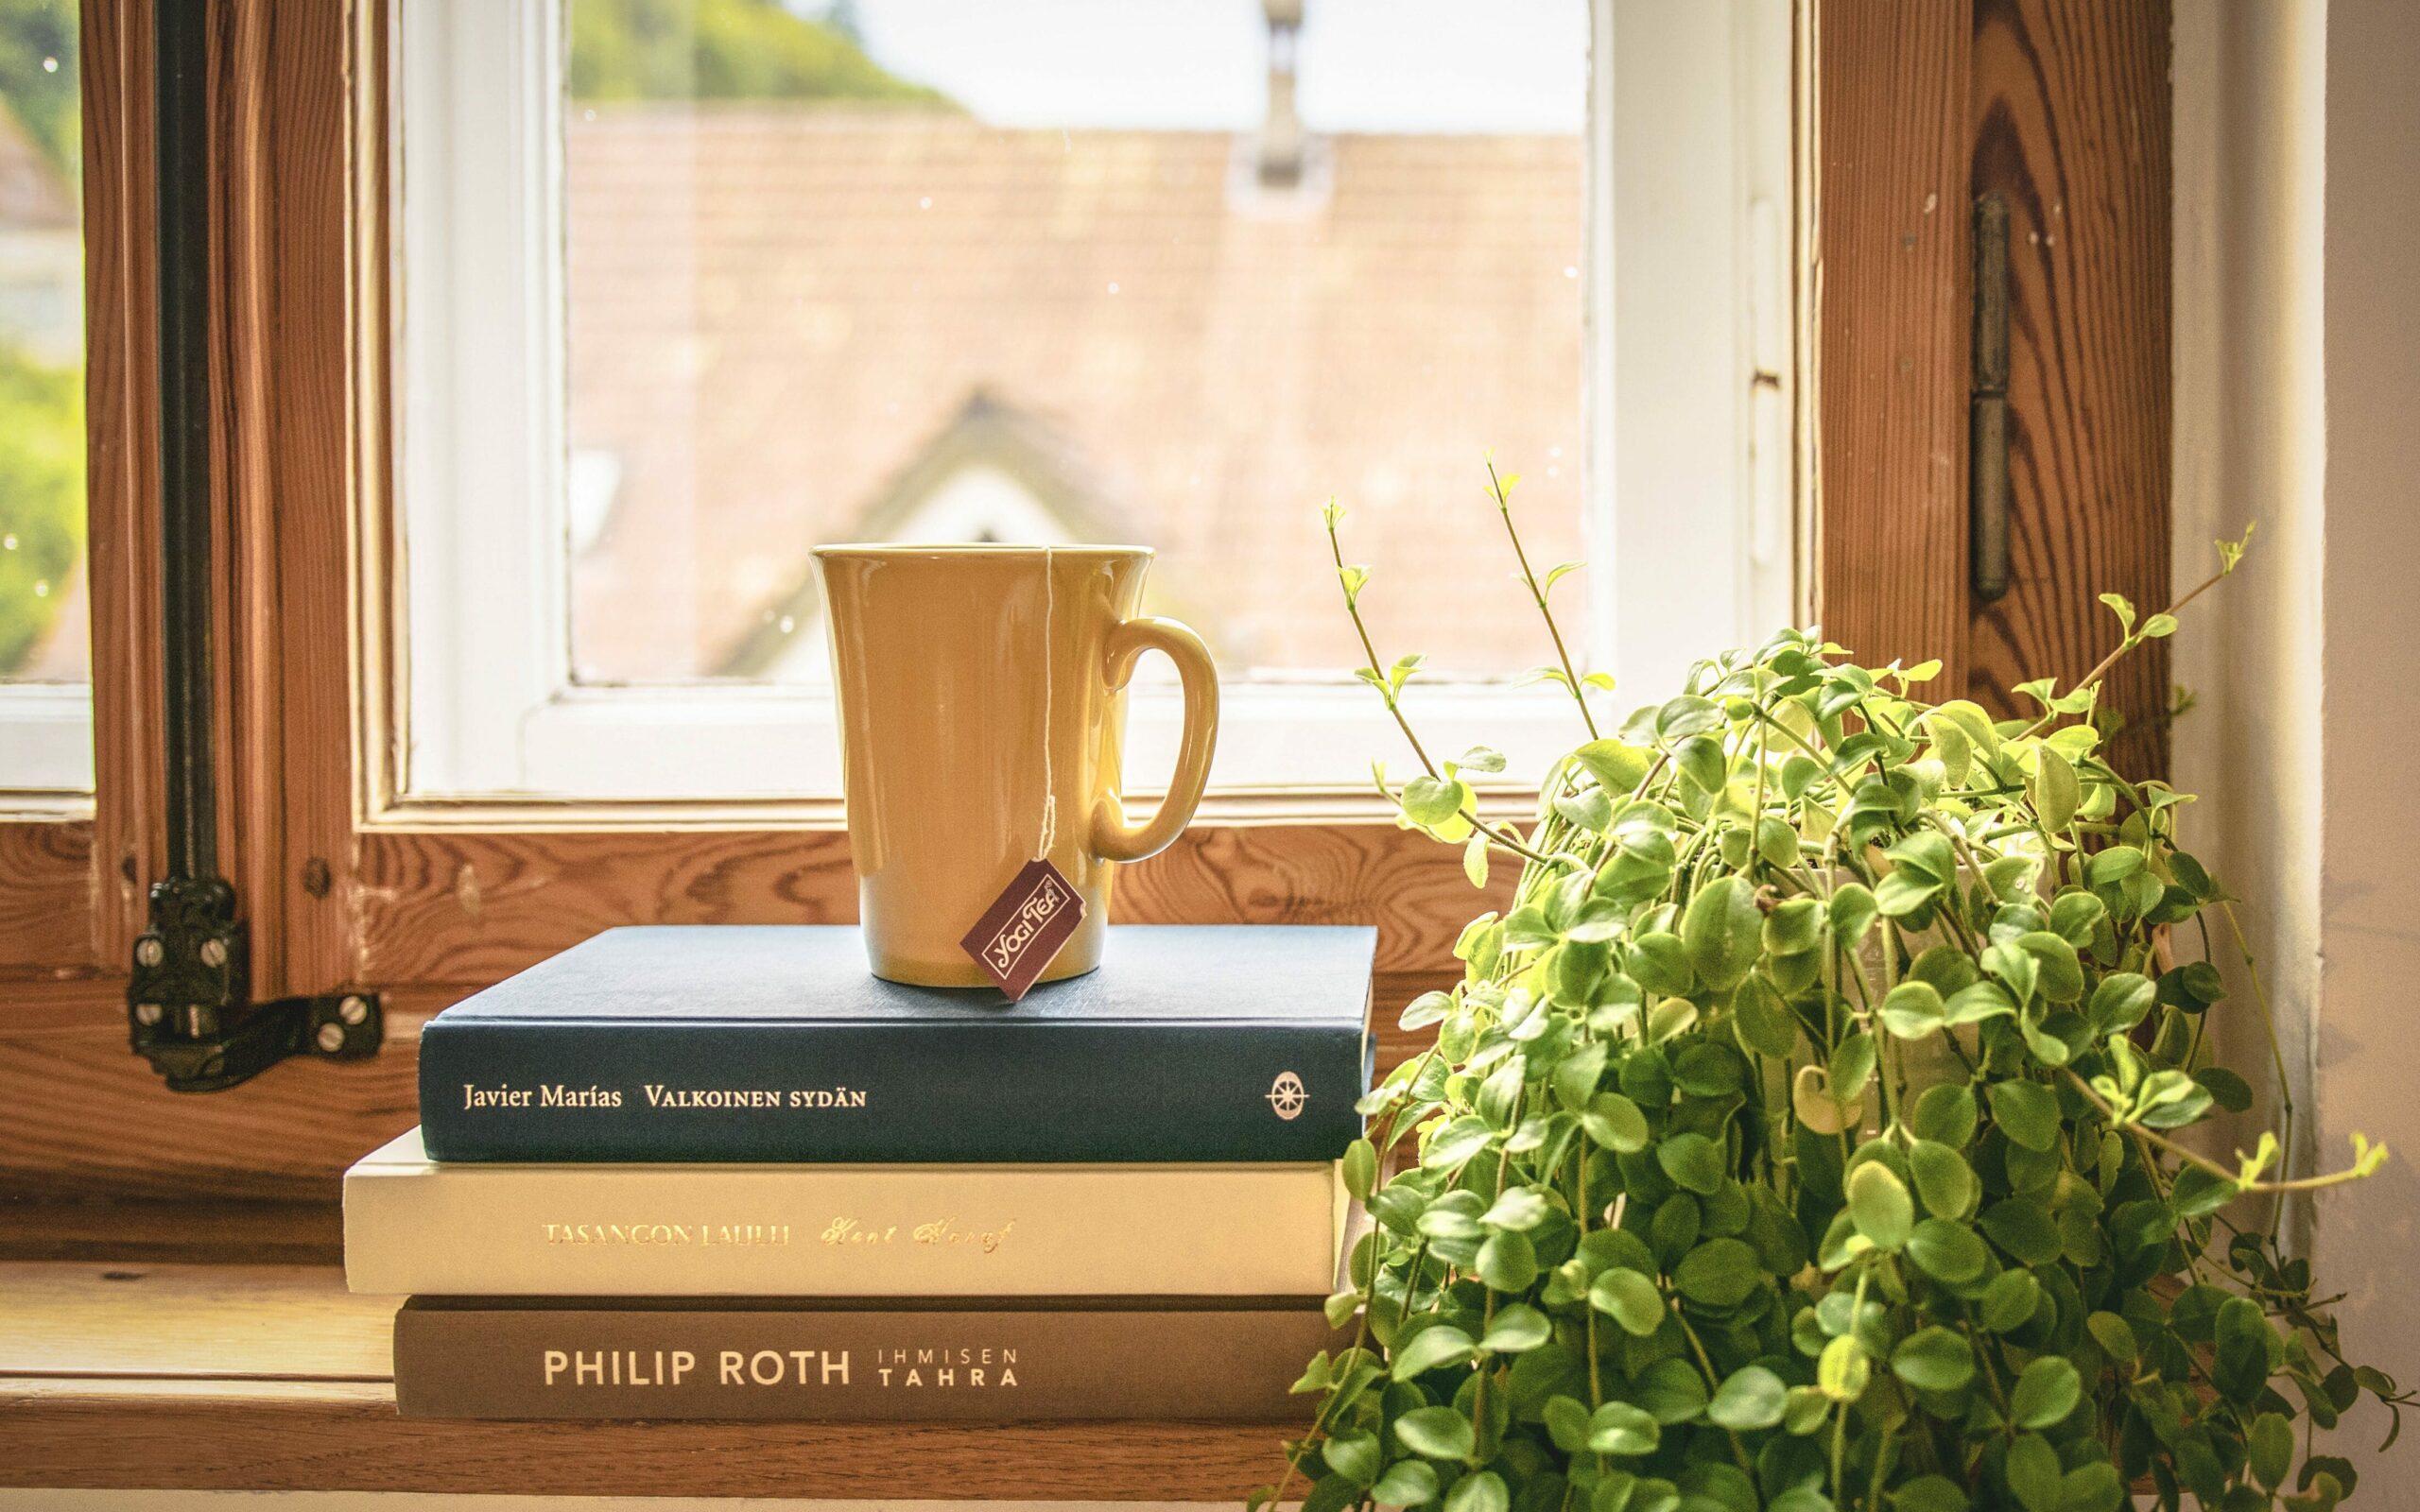 Veliko naravne svetlobe je ključne za popoln bralni kotiček - skodelica čaja na kupu treh knjig in lonček rož na okenski polici. 